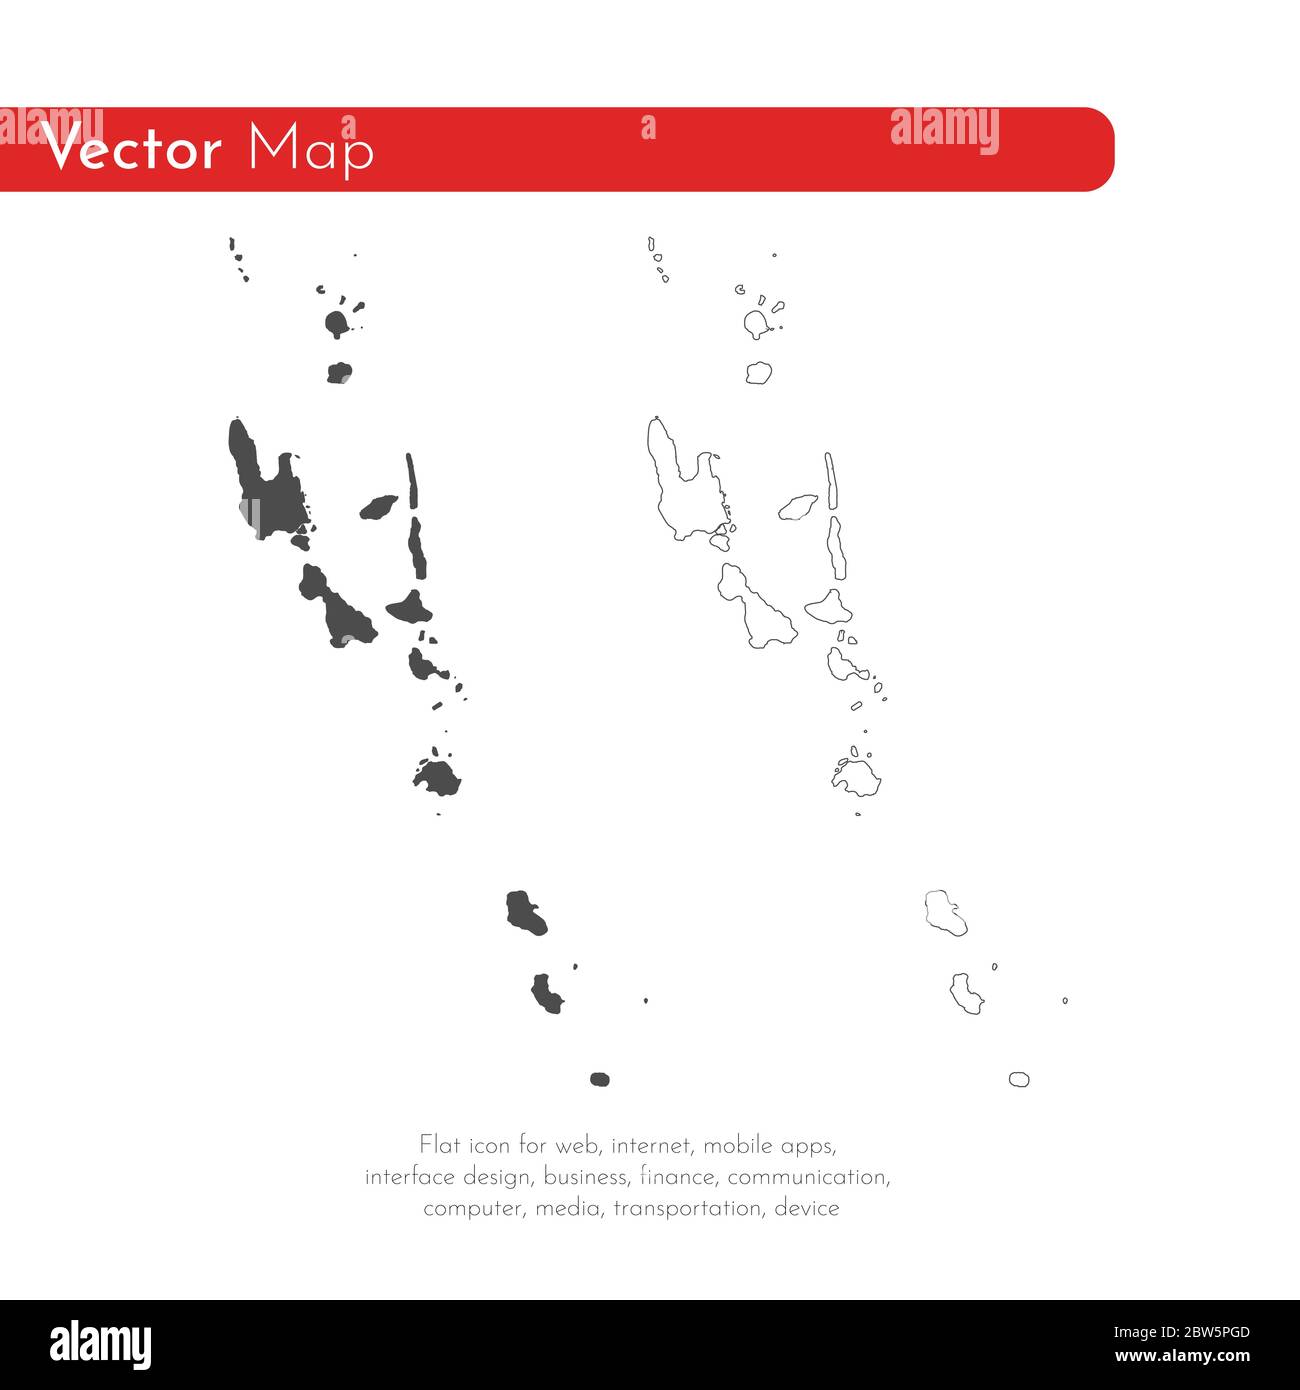 Vektorkarte Vanuatu. Isolierte Vektorgrafik. Schwarz auf weißem Hintergrund. EPS 10-Abbildung. Stock Vektor